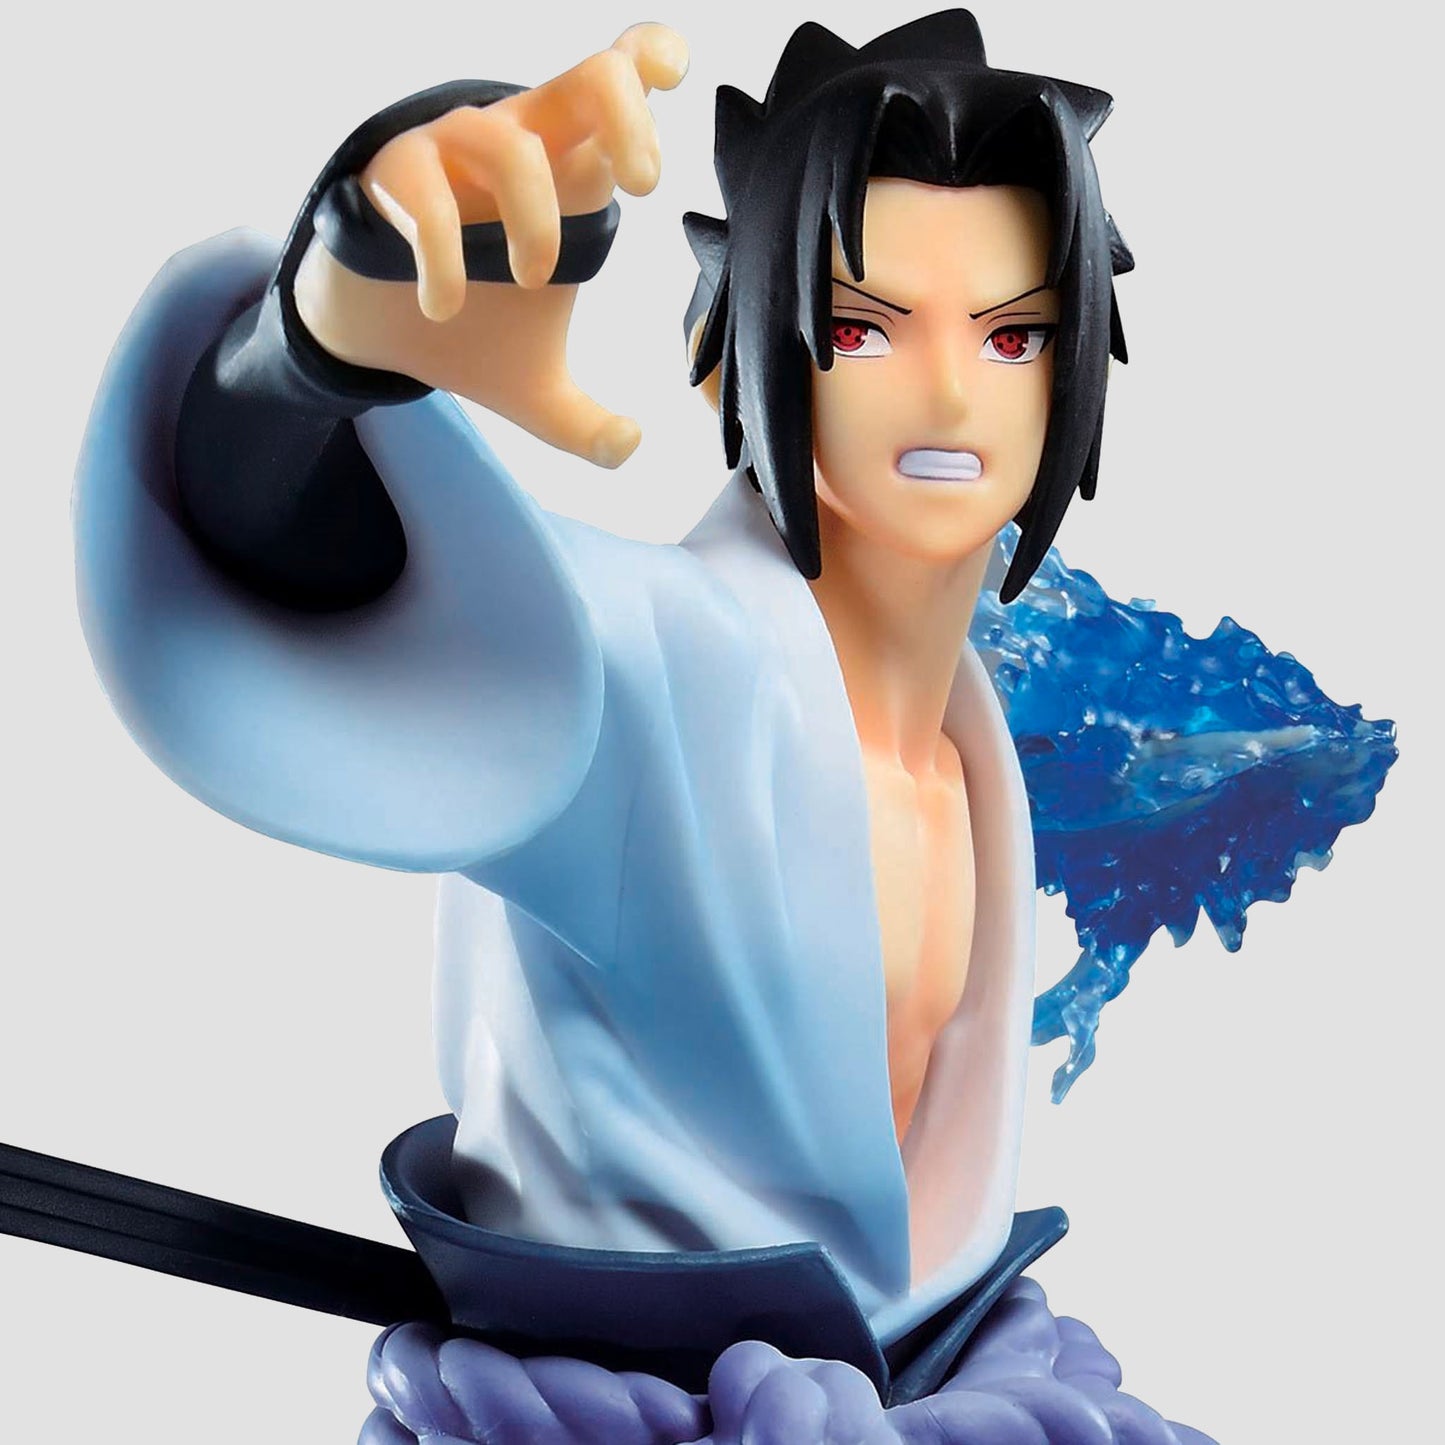 Sasuke Uchiha Chidori Action Figure Naruto Shippuden Anime PVC Figurine